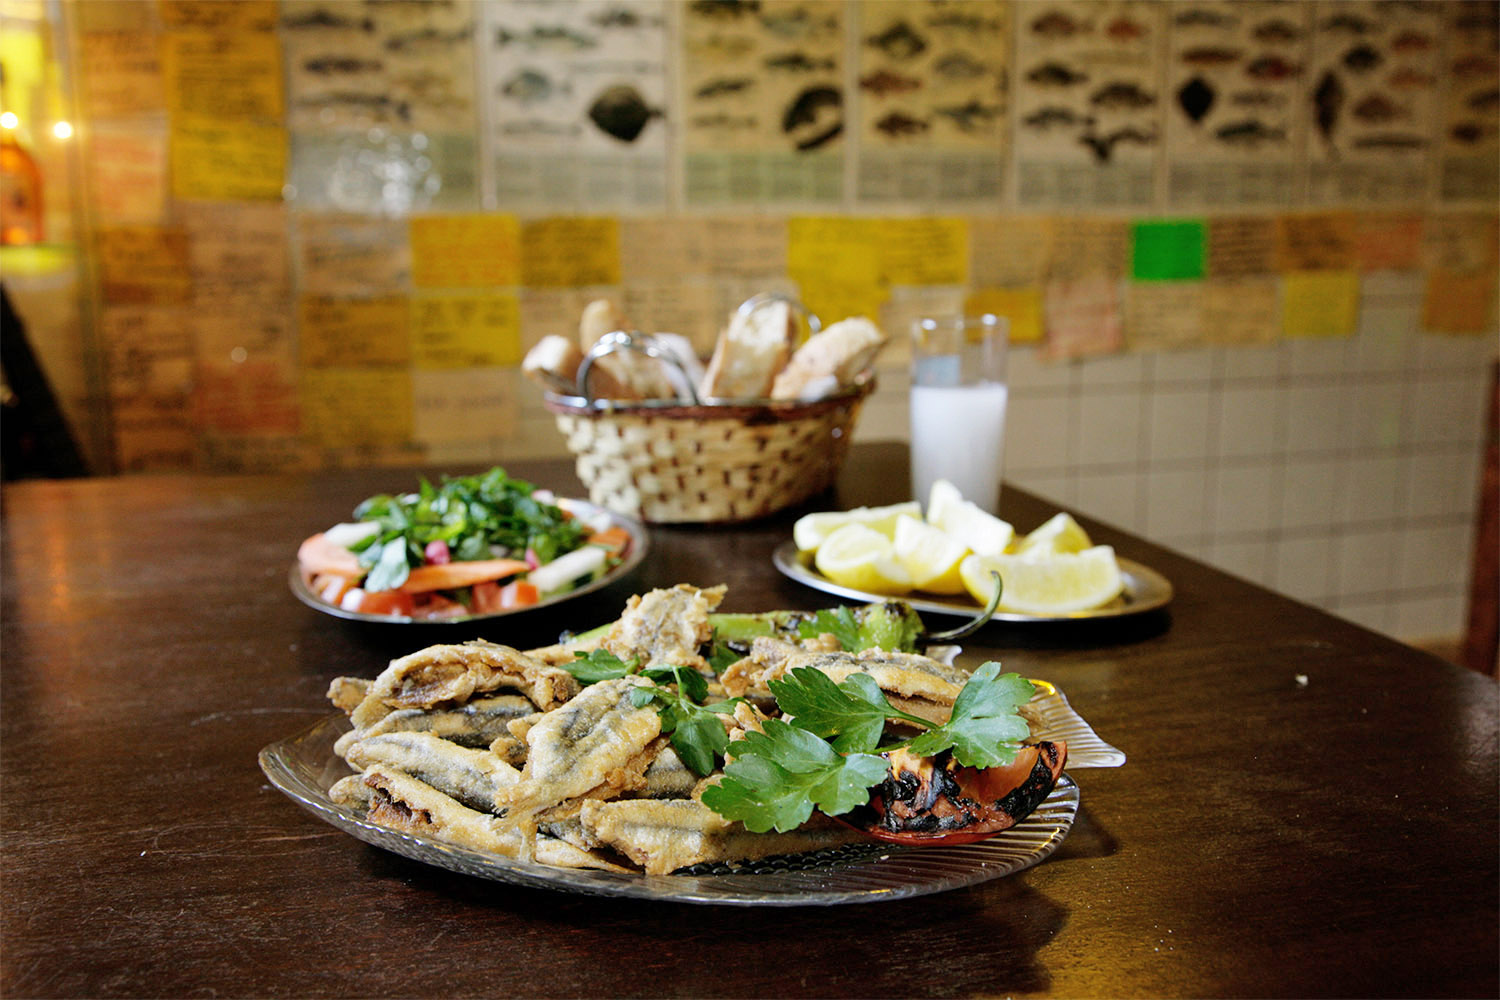 Ergüns Fischbude türkische Restaurants in Berlin frittierte Sardinen